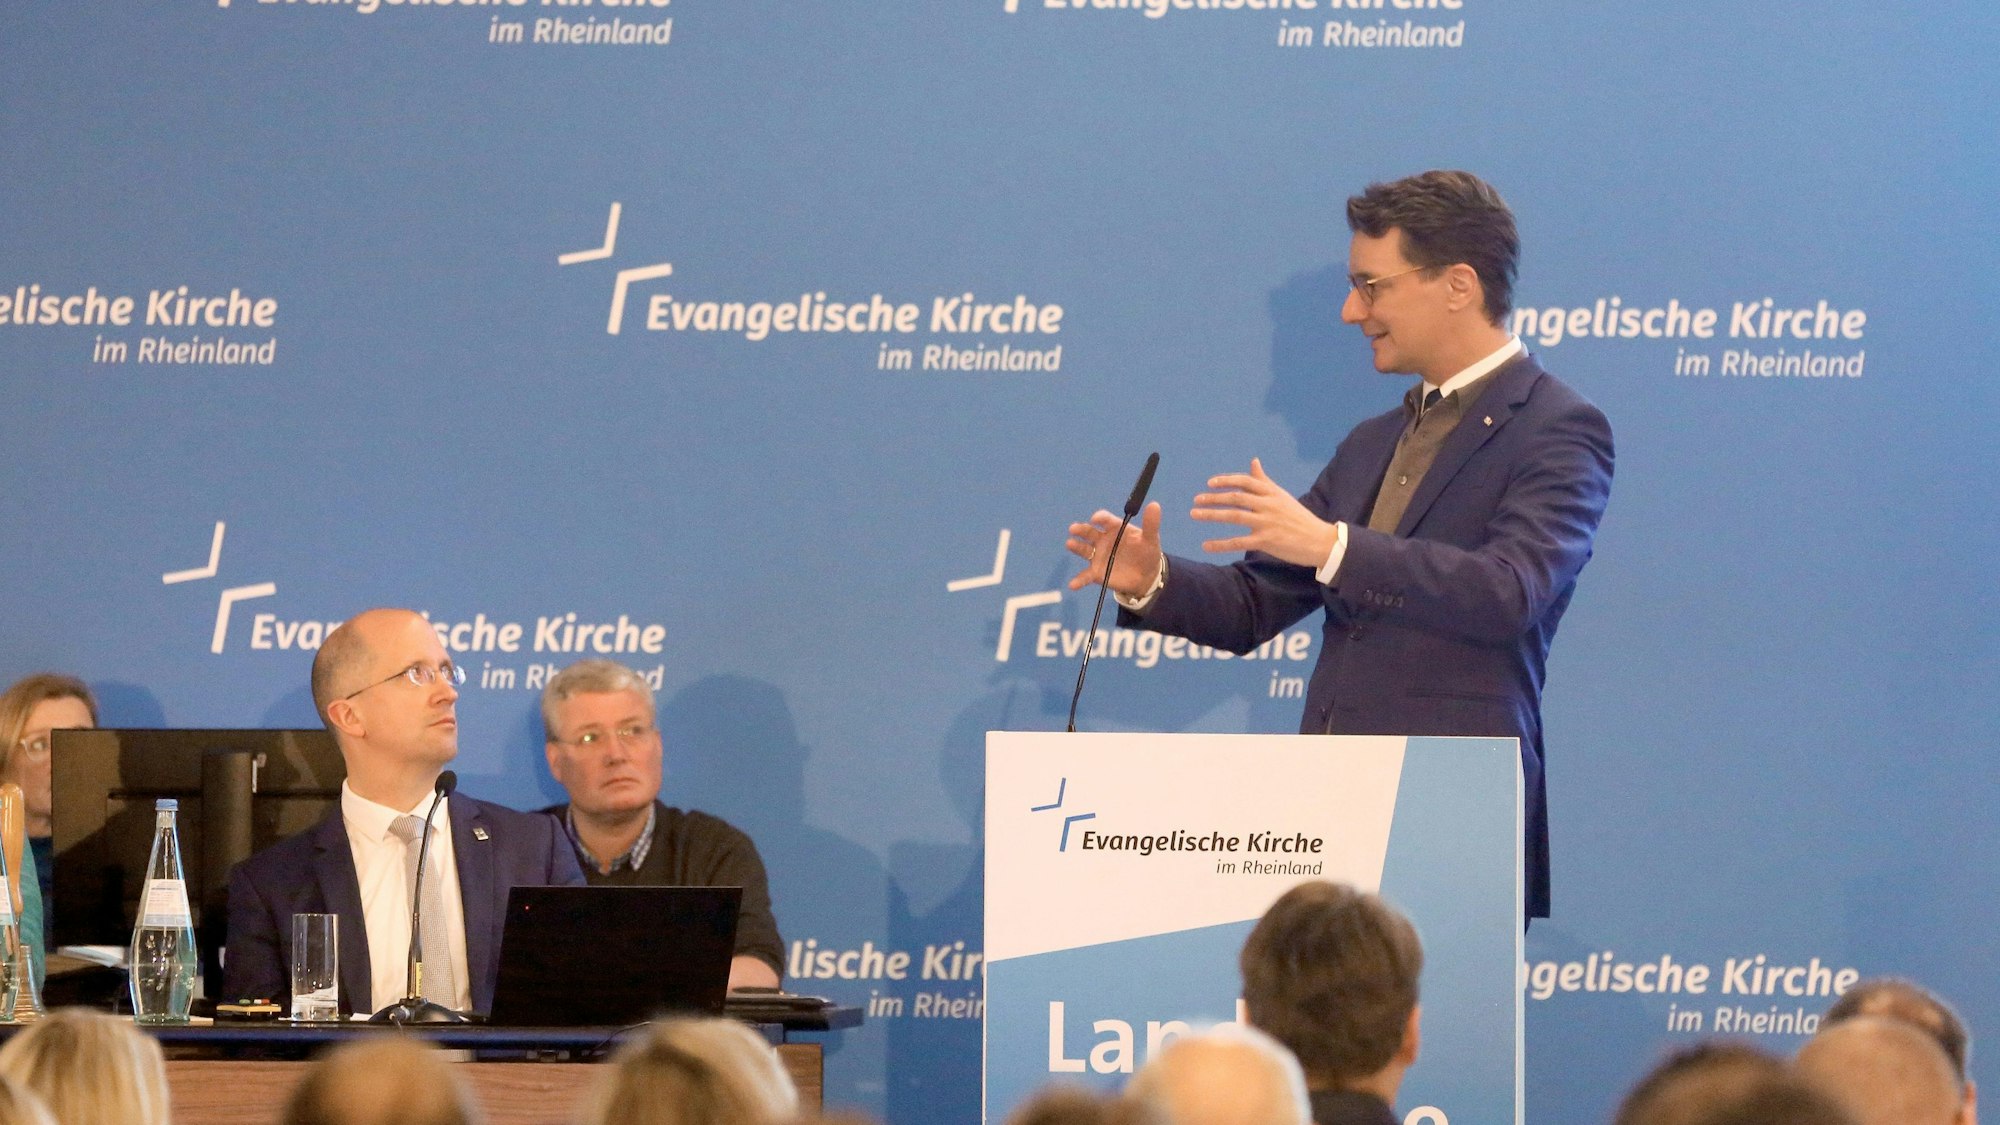 Der nordrhein-westfälische Ministerpräsident Hendrik Wüst (CDU) spricht während der Landessynode der Evangelischen Kirche im Rheinland zu den Teilnehmern, links sitzt Thorsten Latzel, Präses der Evangelischen Kirche im Rheinland.